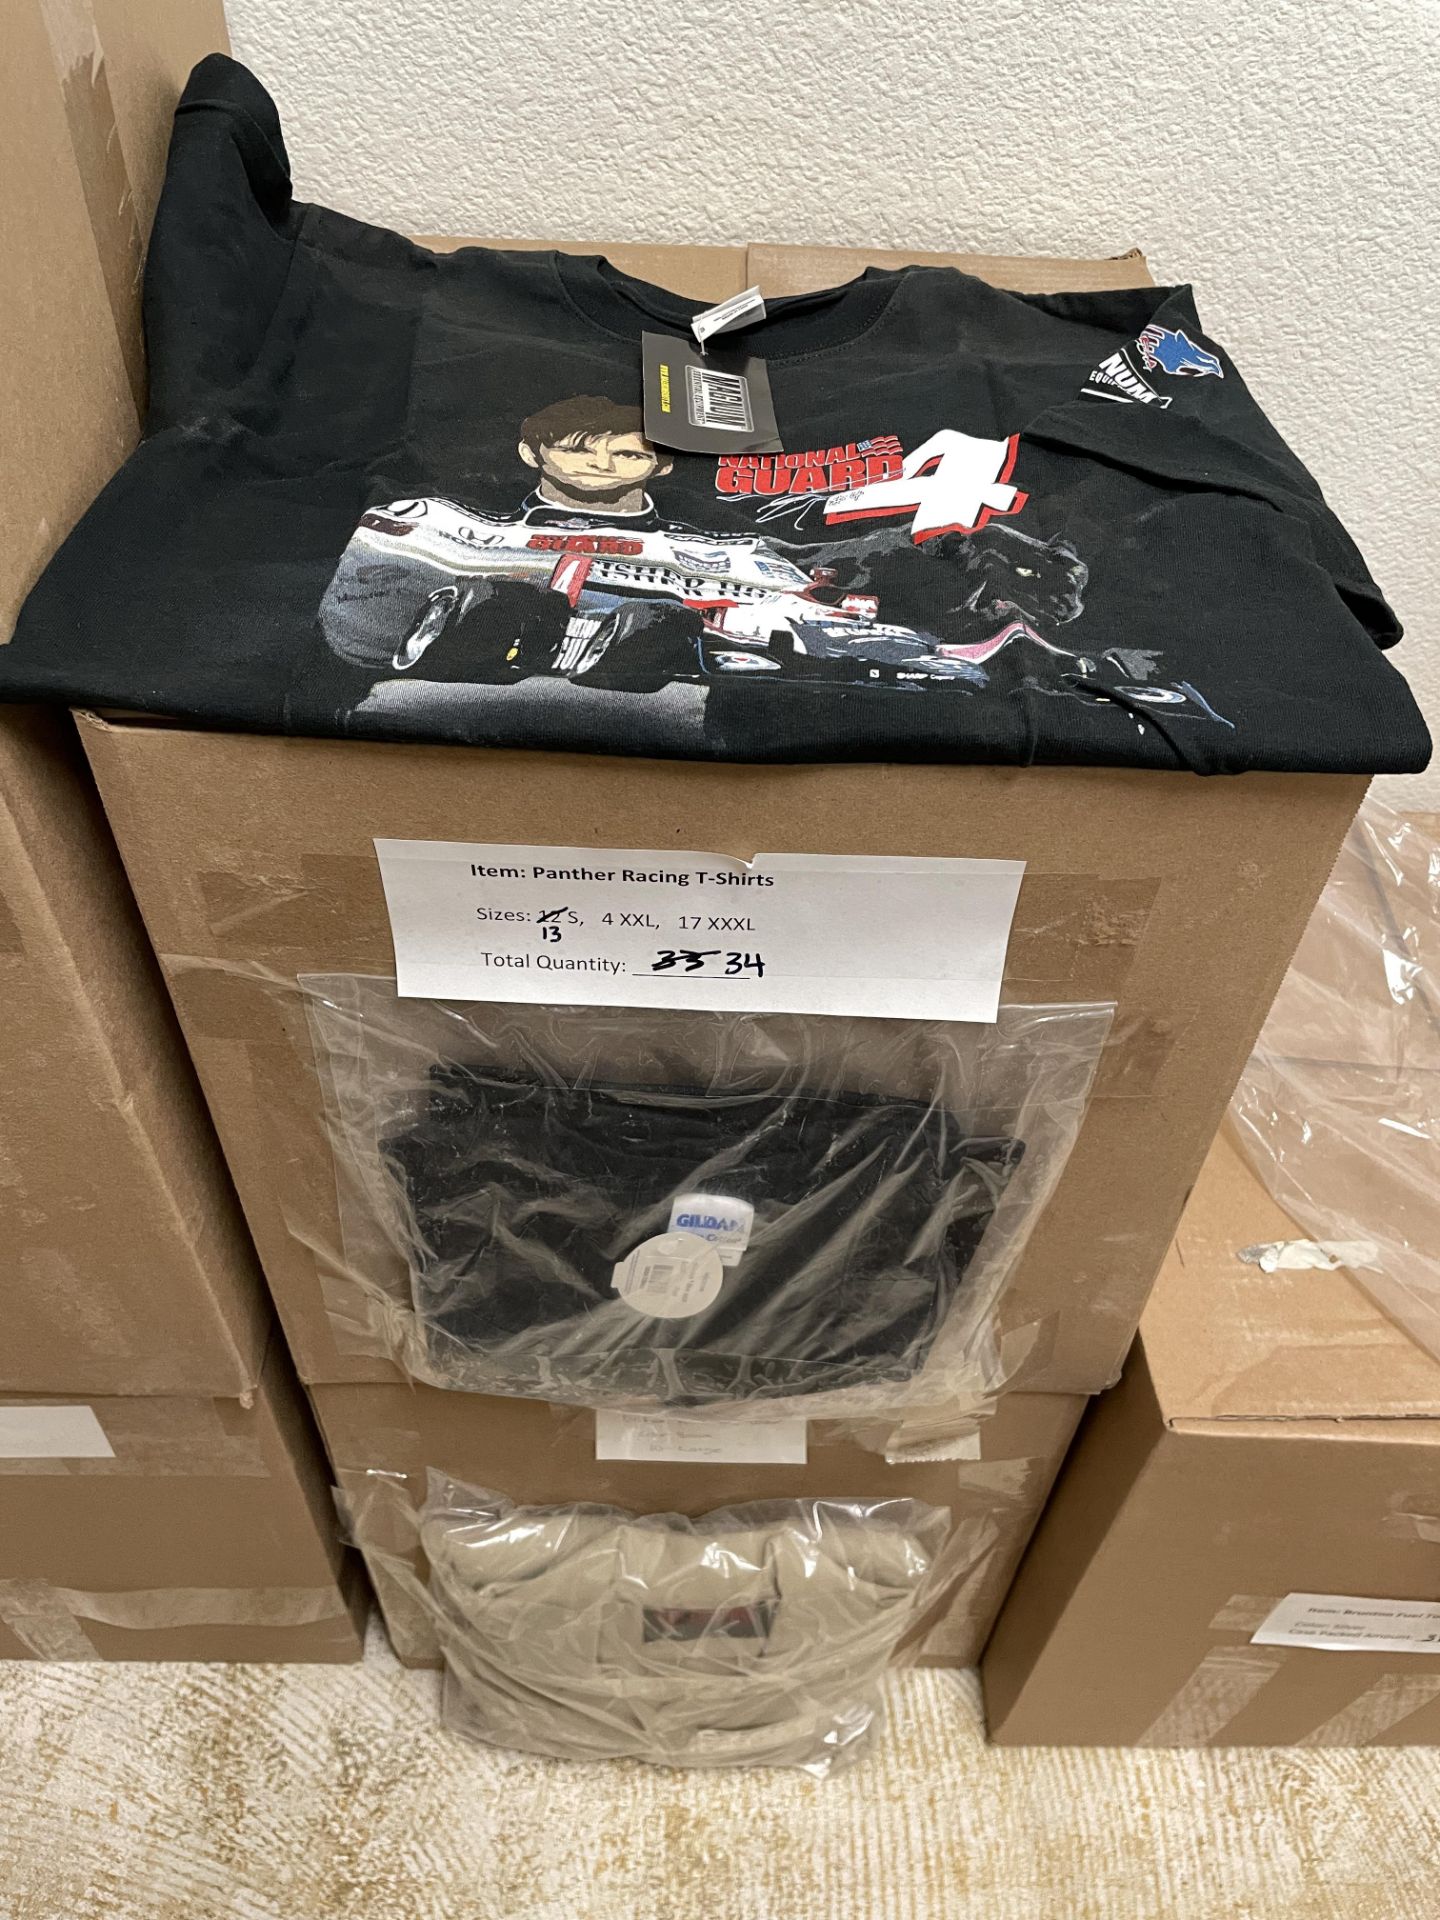 44 Piece - Mixed Clothing Lot: 34 Panther racing T-Shirts various sizes, 10 DriFire Tactical Shirts